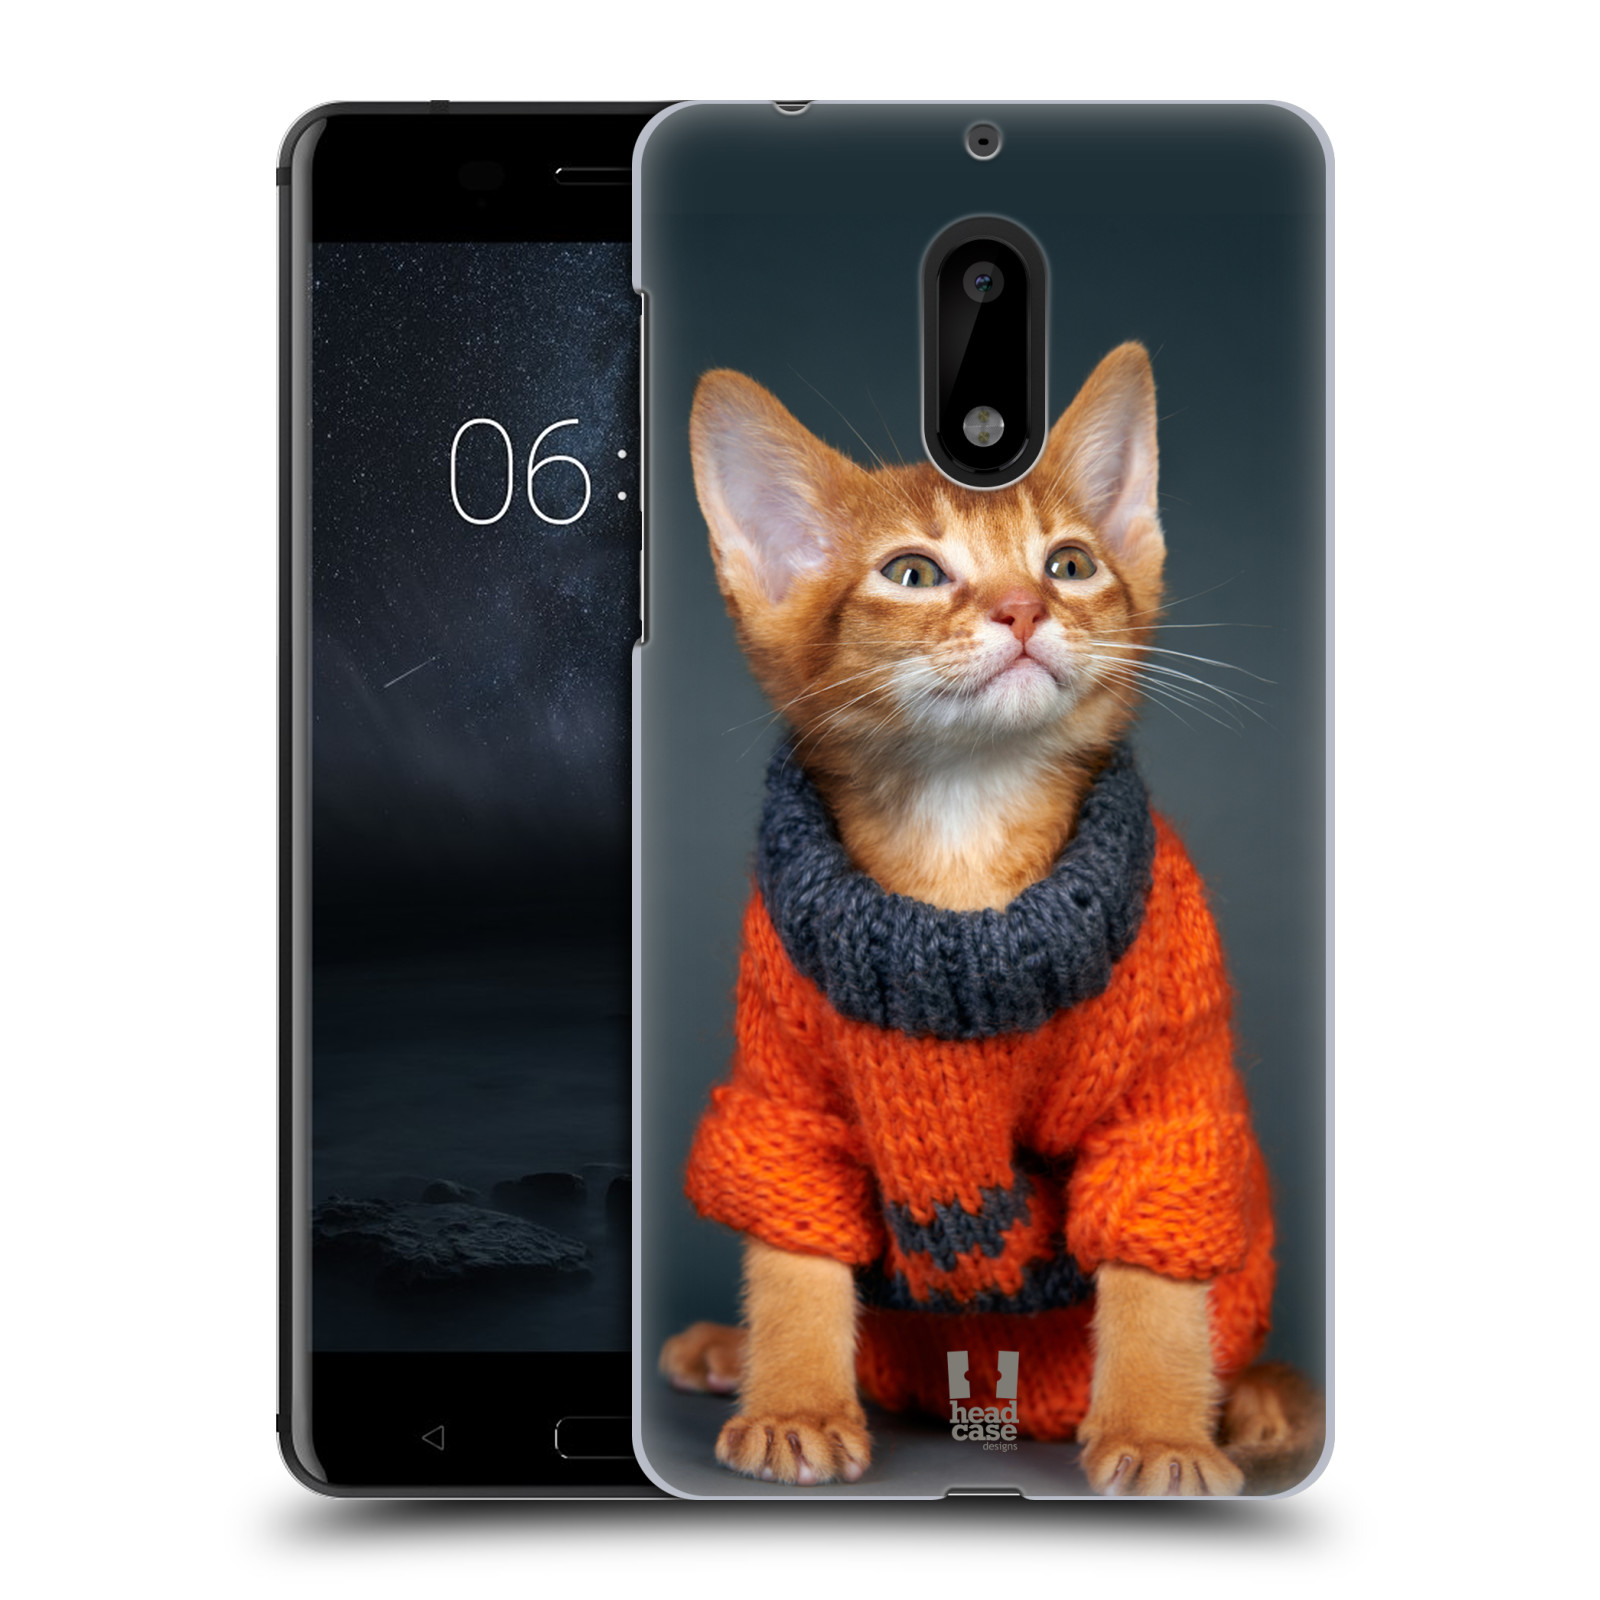 HEAD CASE plastový obal na mobil Nokia 6 vzor Legrační zvířátka kočička v oranžovém svetru